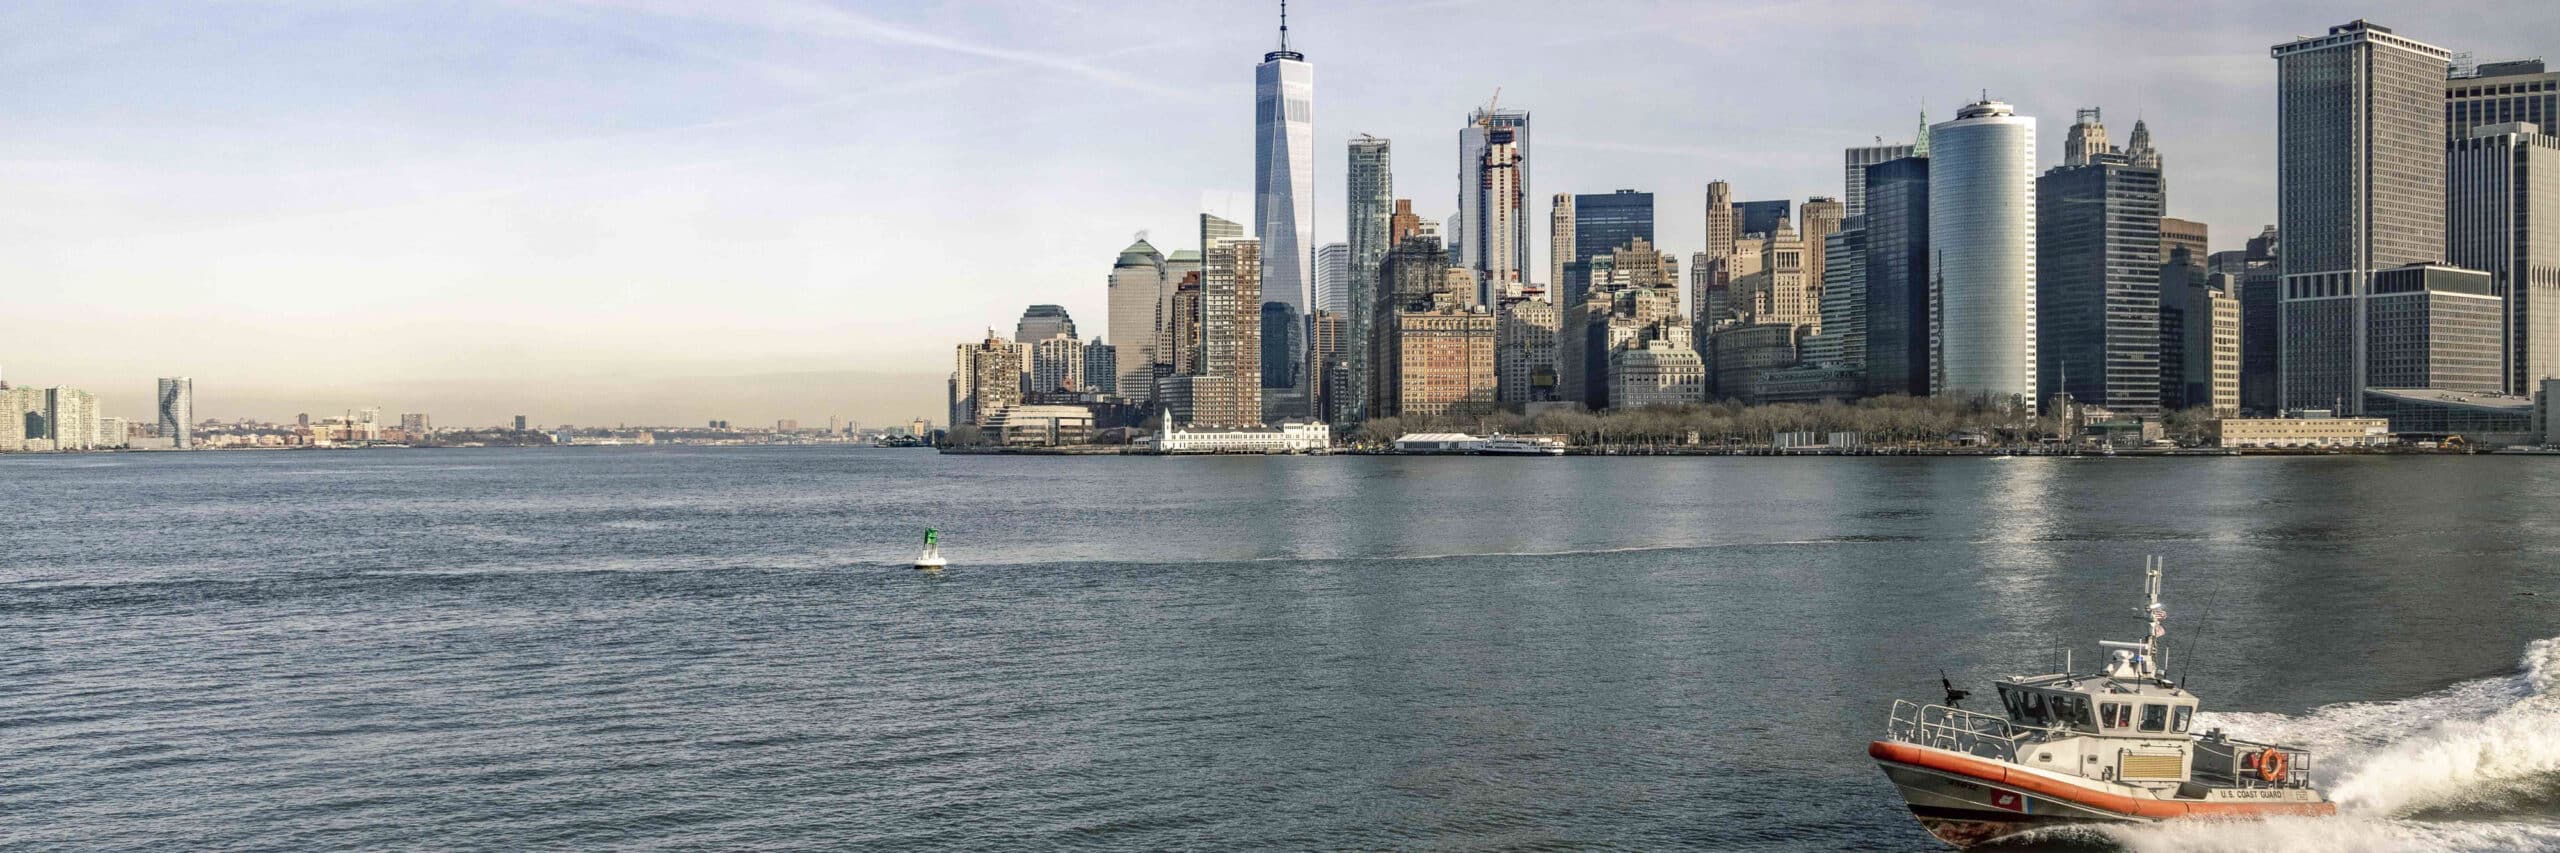 Ein Panoramablick auf die Skyline von Lower Manhattan über einen Fluss hinweg, mit hohen Wolkenkratzern, darunter das One World Trade Center. Im Vordergrund rast ein Boot der Küstenwache über das Wasser. © Fotografie Tomas Rodriguez